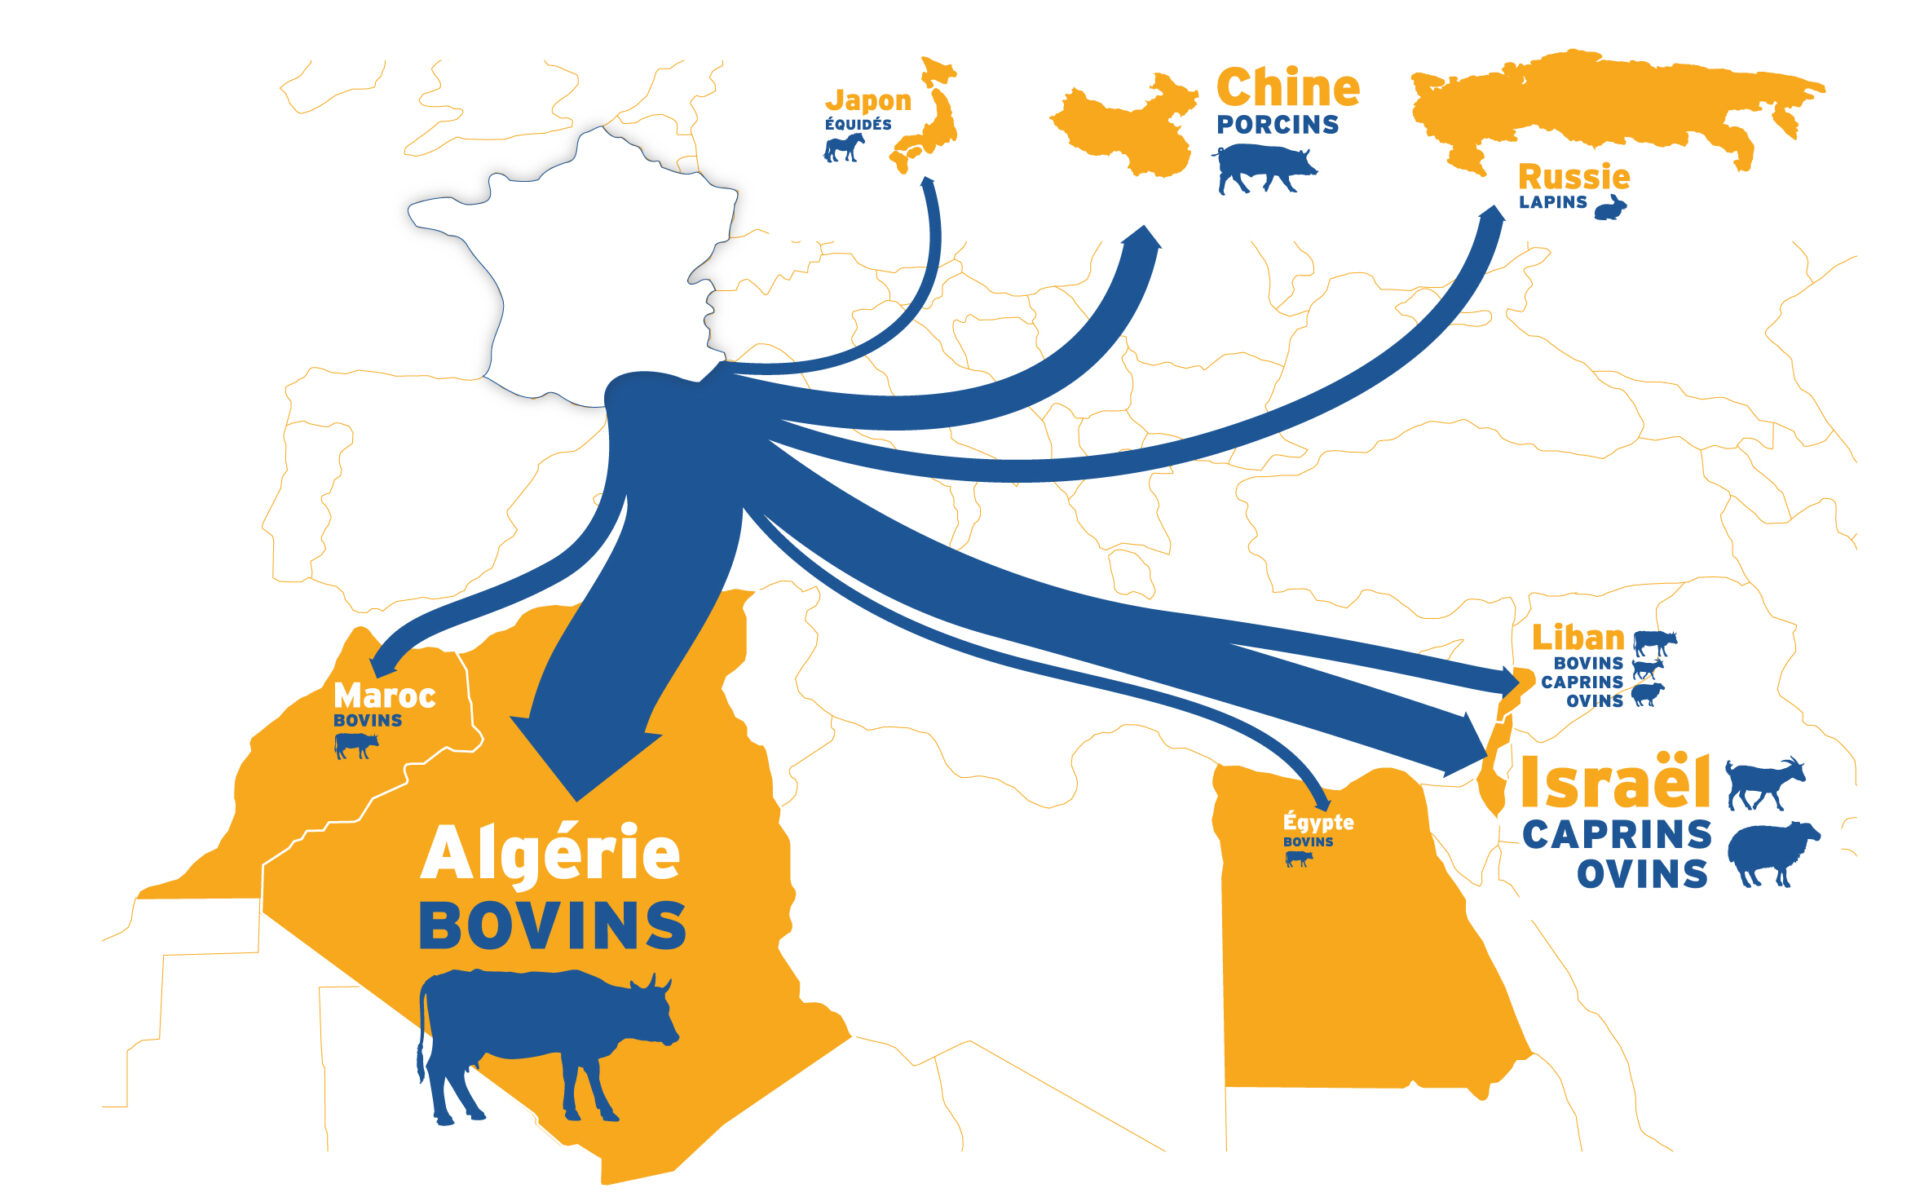 Carte des exportations des animaux vivants depuis la France vers l'Algérie, le Maroc, Israël, le Japon, la Chine, et la Russie.